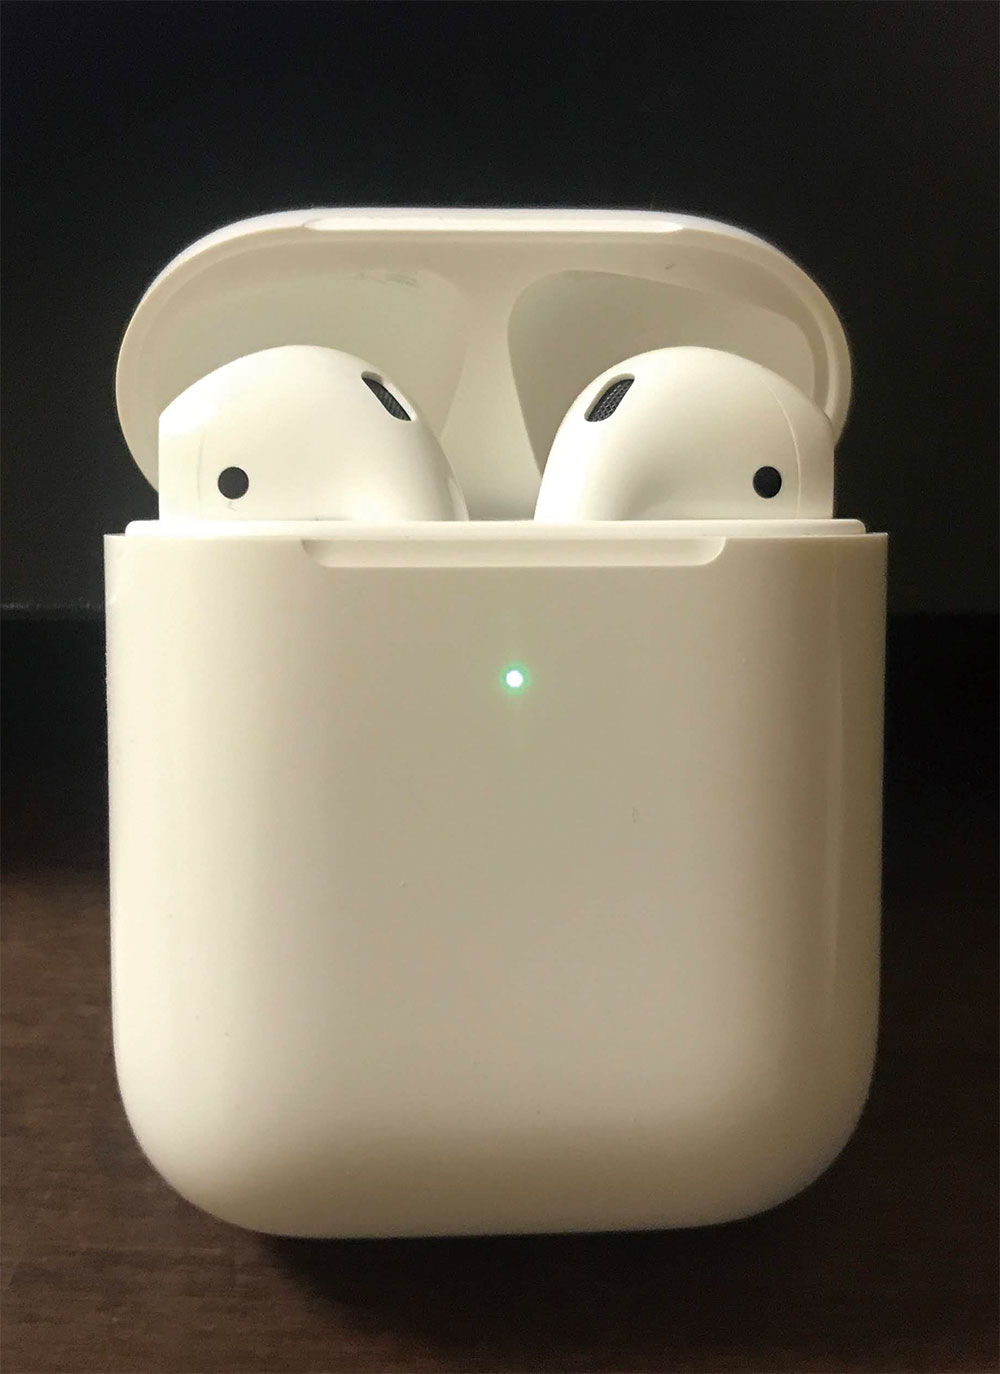 アップルの無線イヤホン「AirPods」、2種類のBluetoothを使い分ける